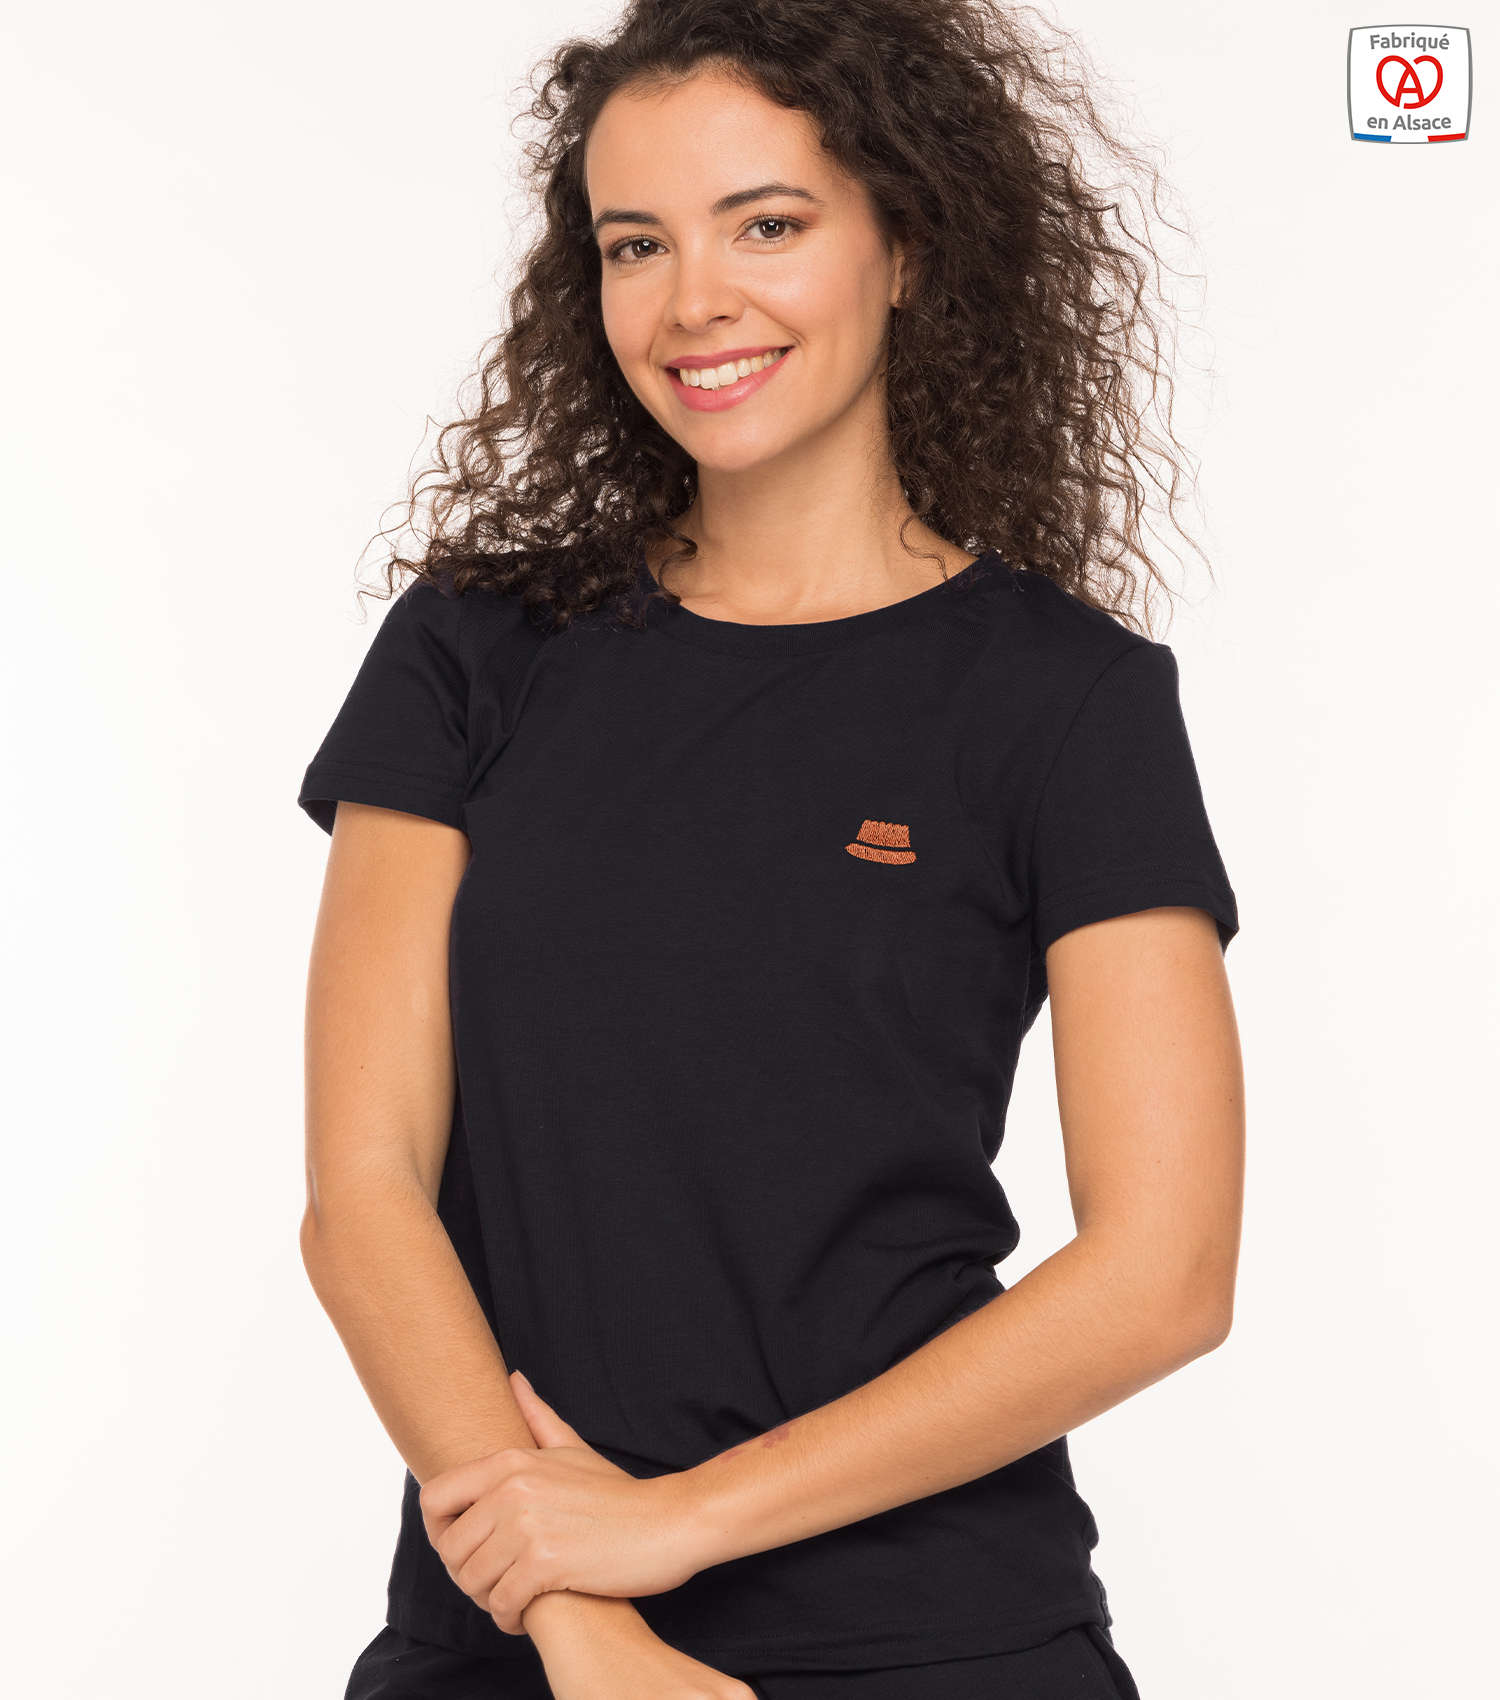 theim-t-shirt-femme-noir-kouglof-made-in-alsace-1500x1700px